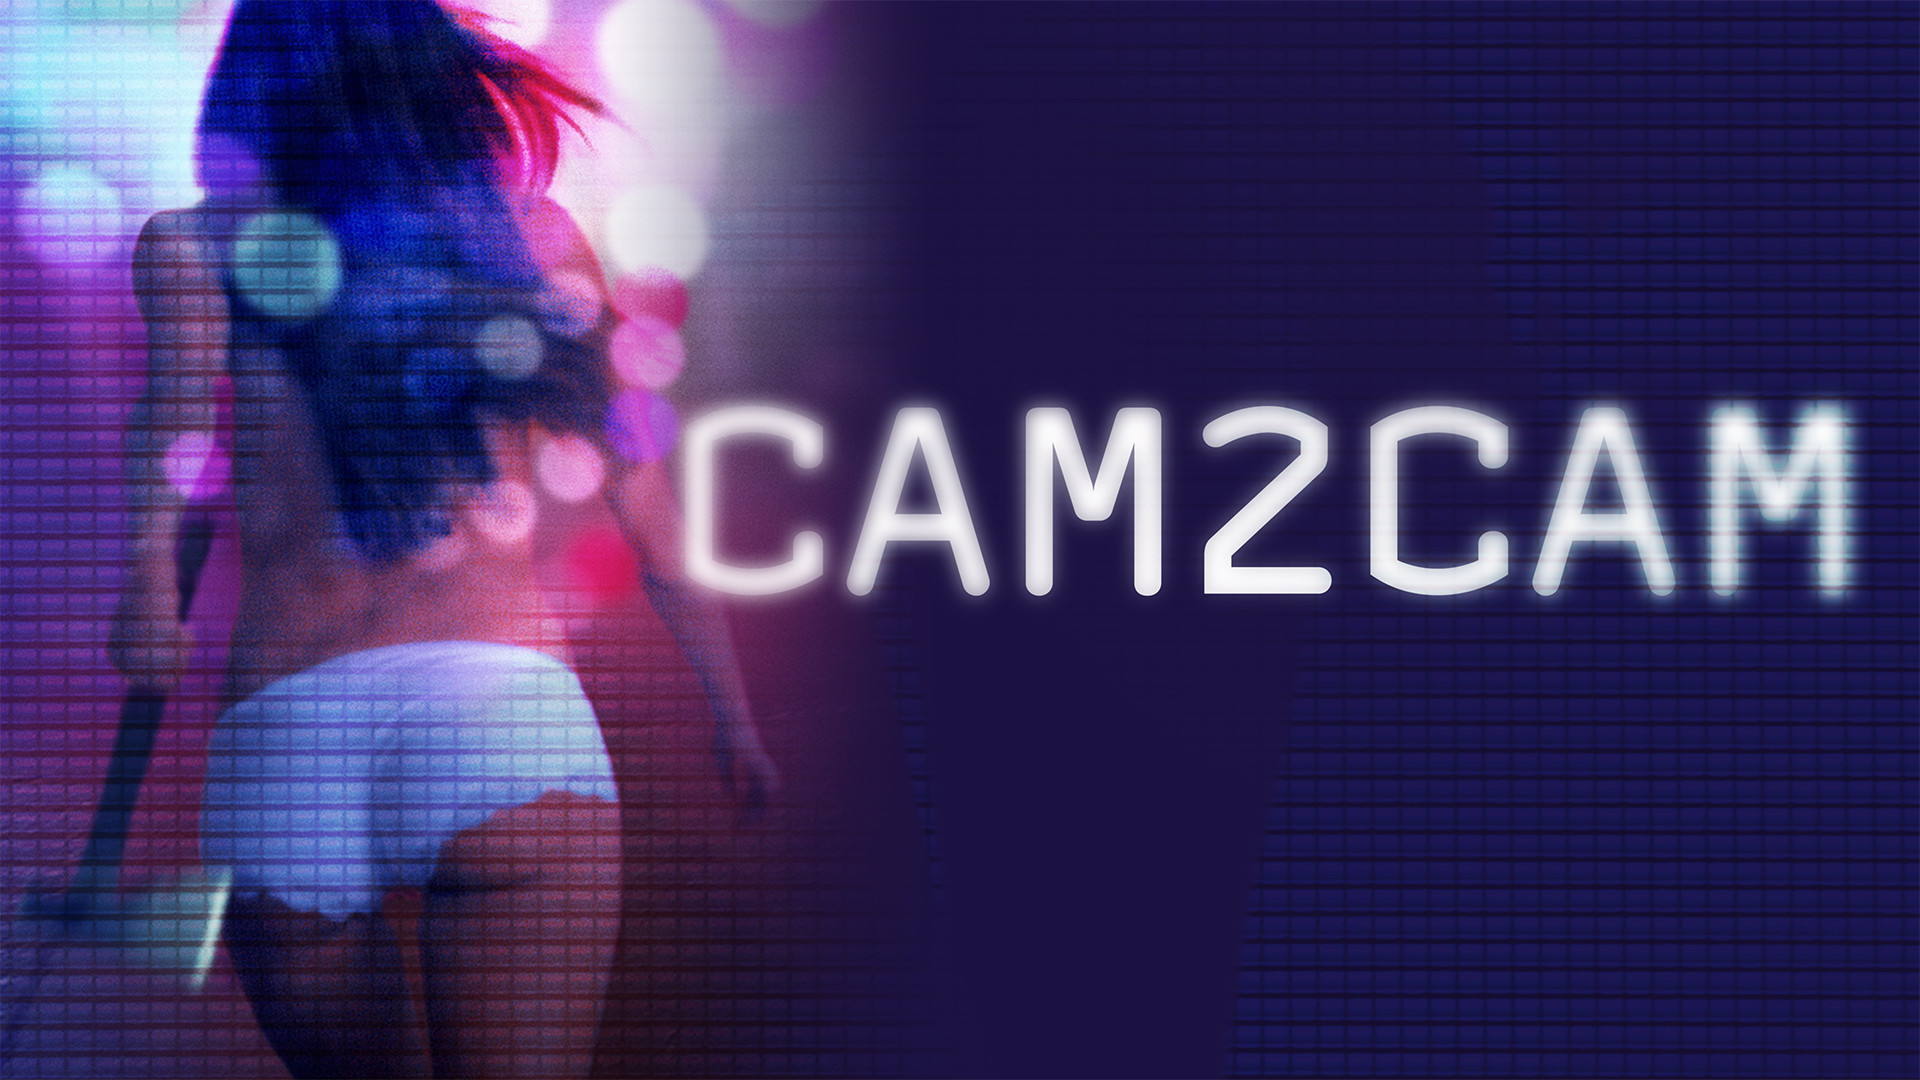 Cam2cam